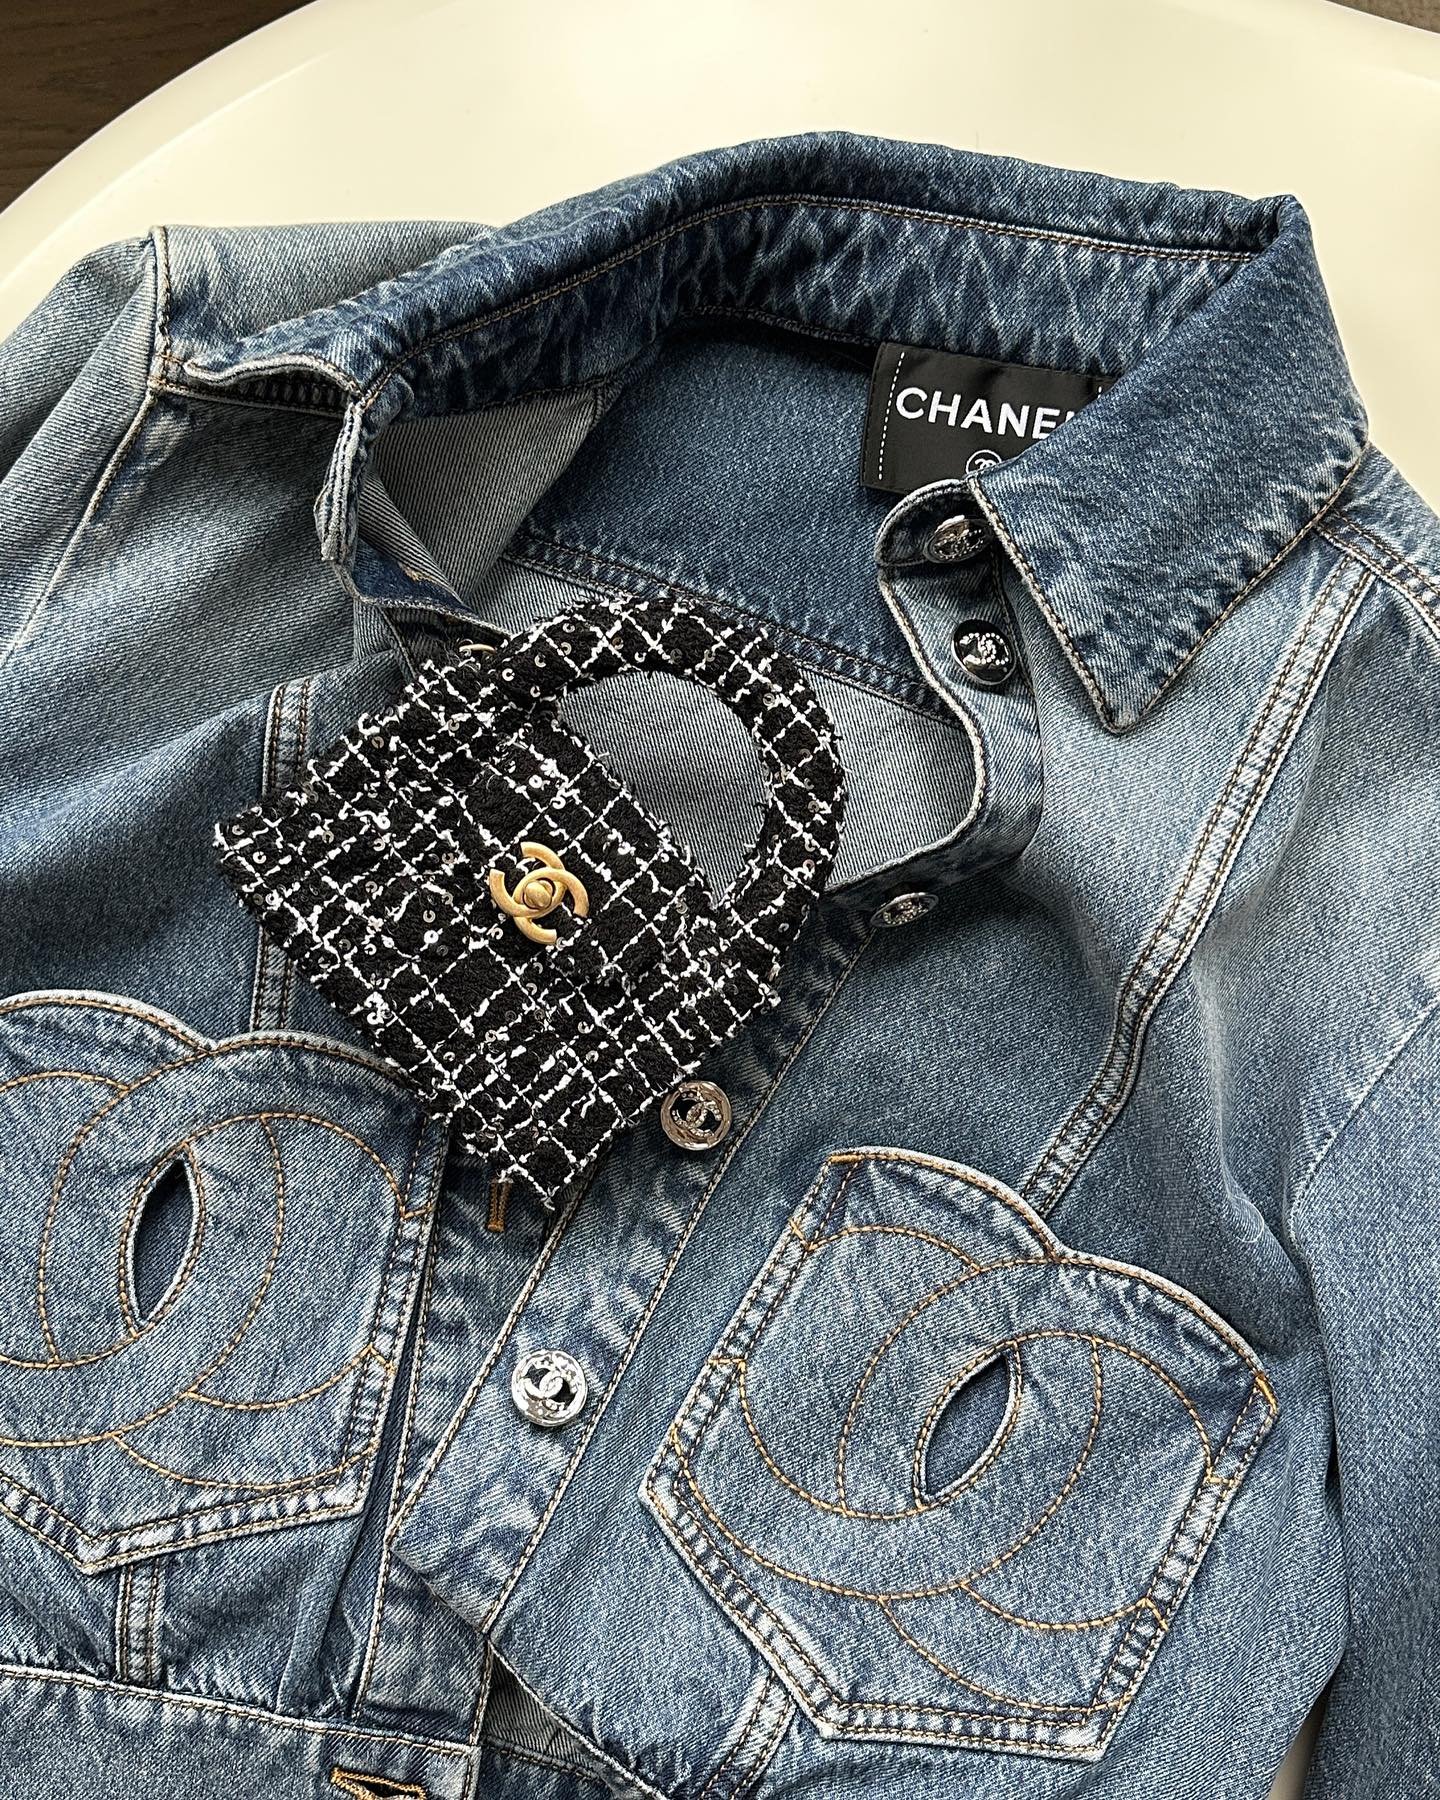 Chanel - Chanel - réplicas - Verão - Paris - https://stealthelook.com.br